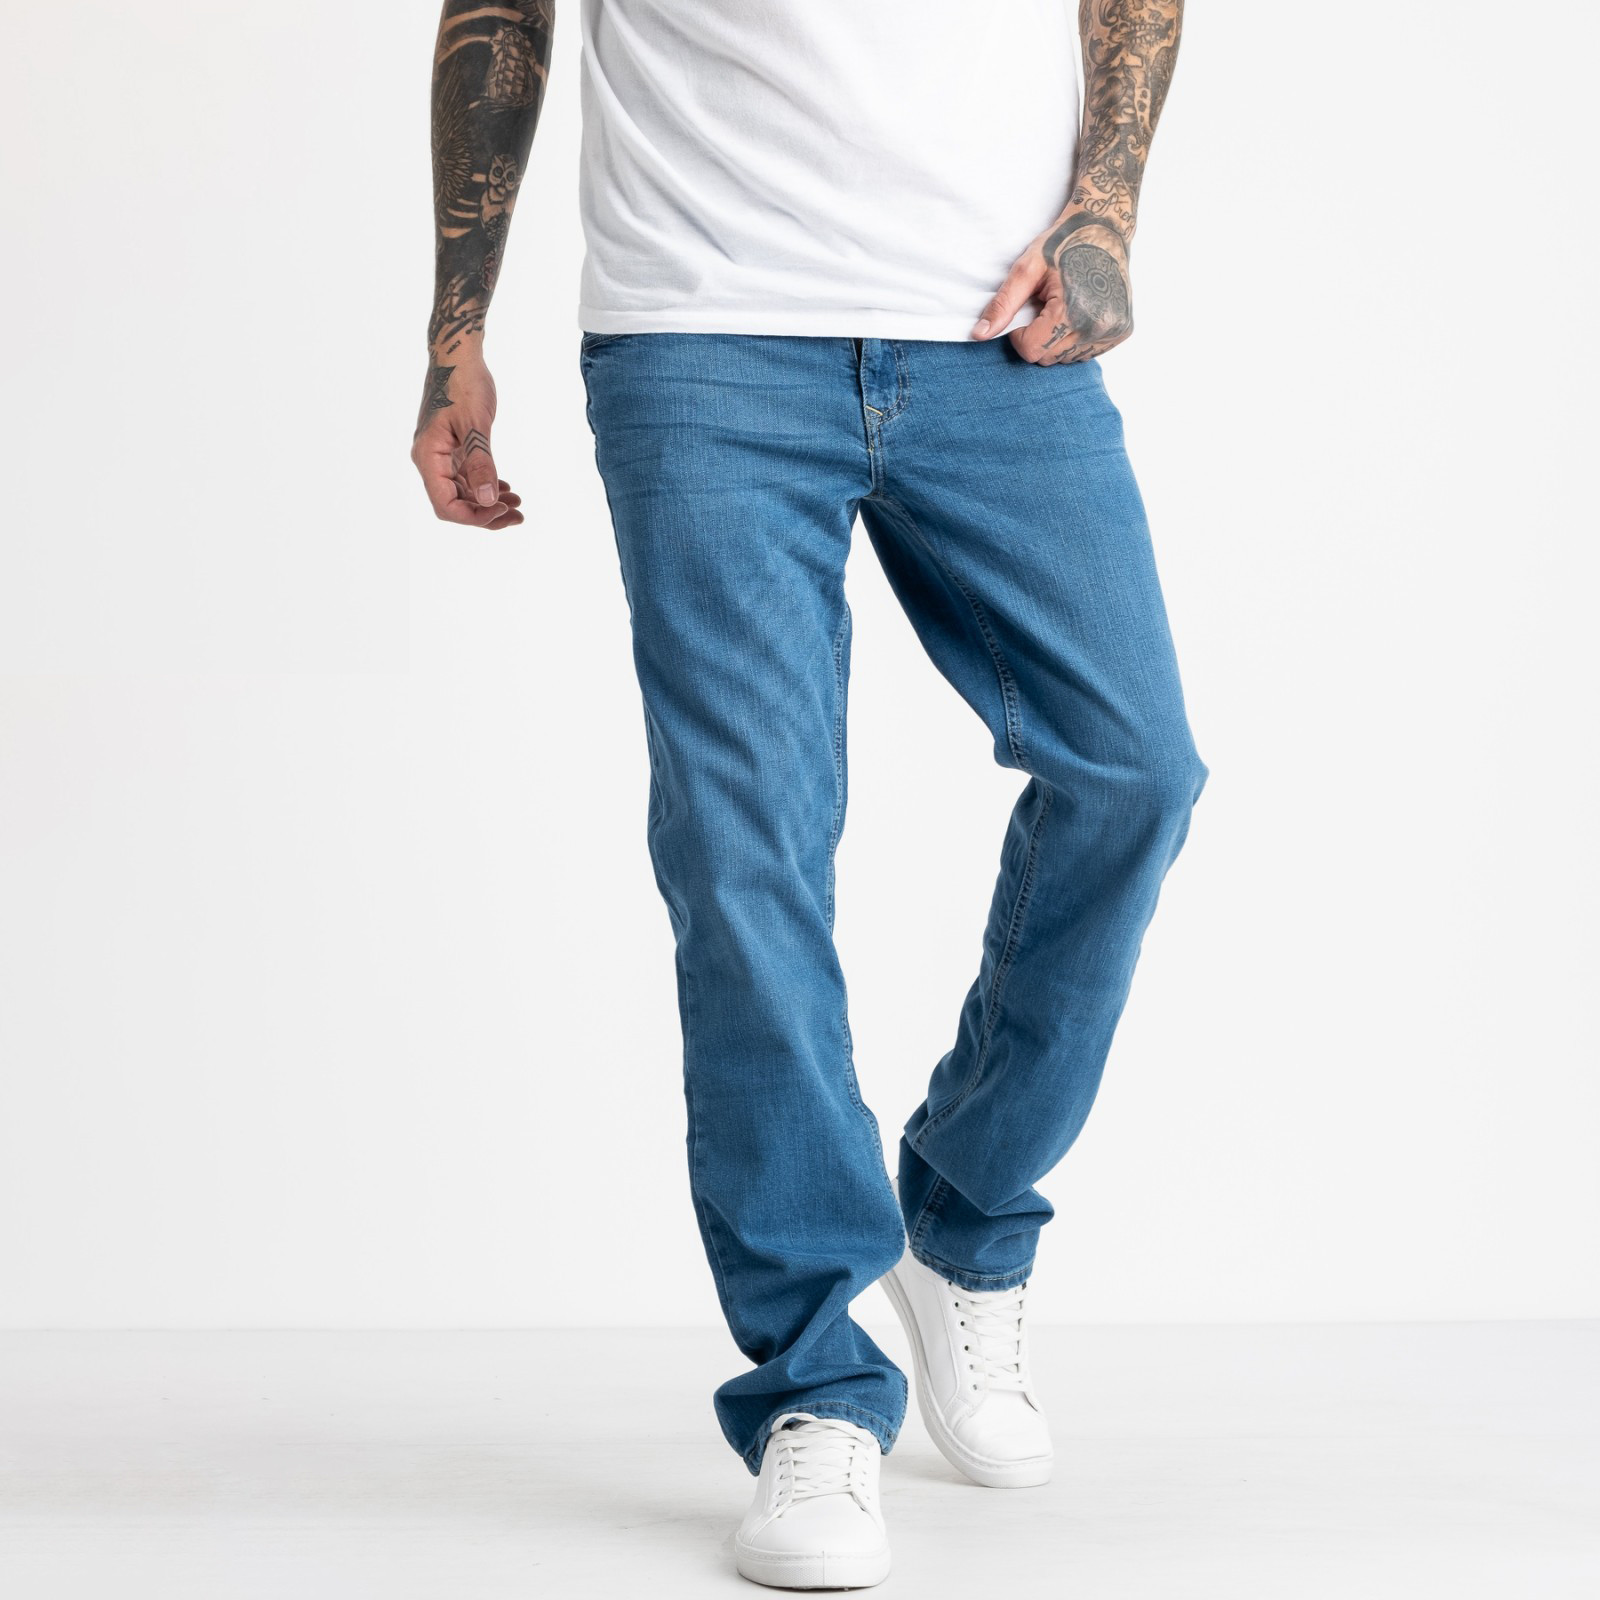 1934-1 Nescoly джинсы мужские голубые стрейчевые (8 ед. размеры: 30.32.34.36/2.40/2.+1)